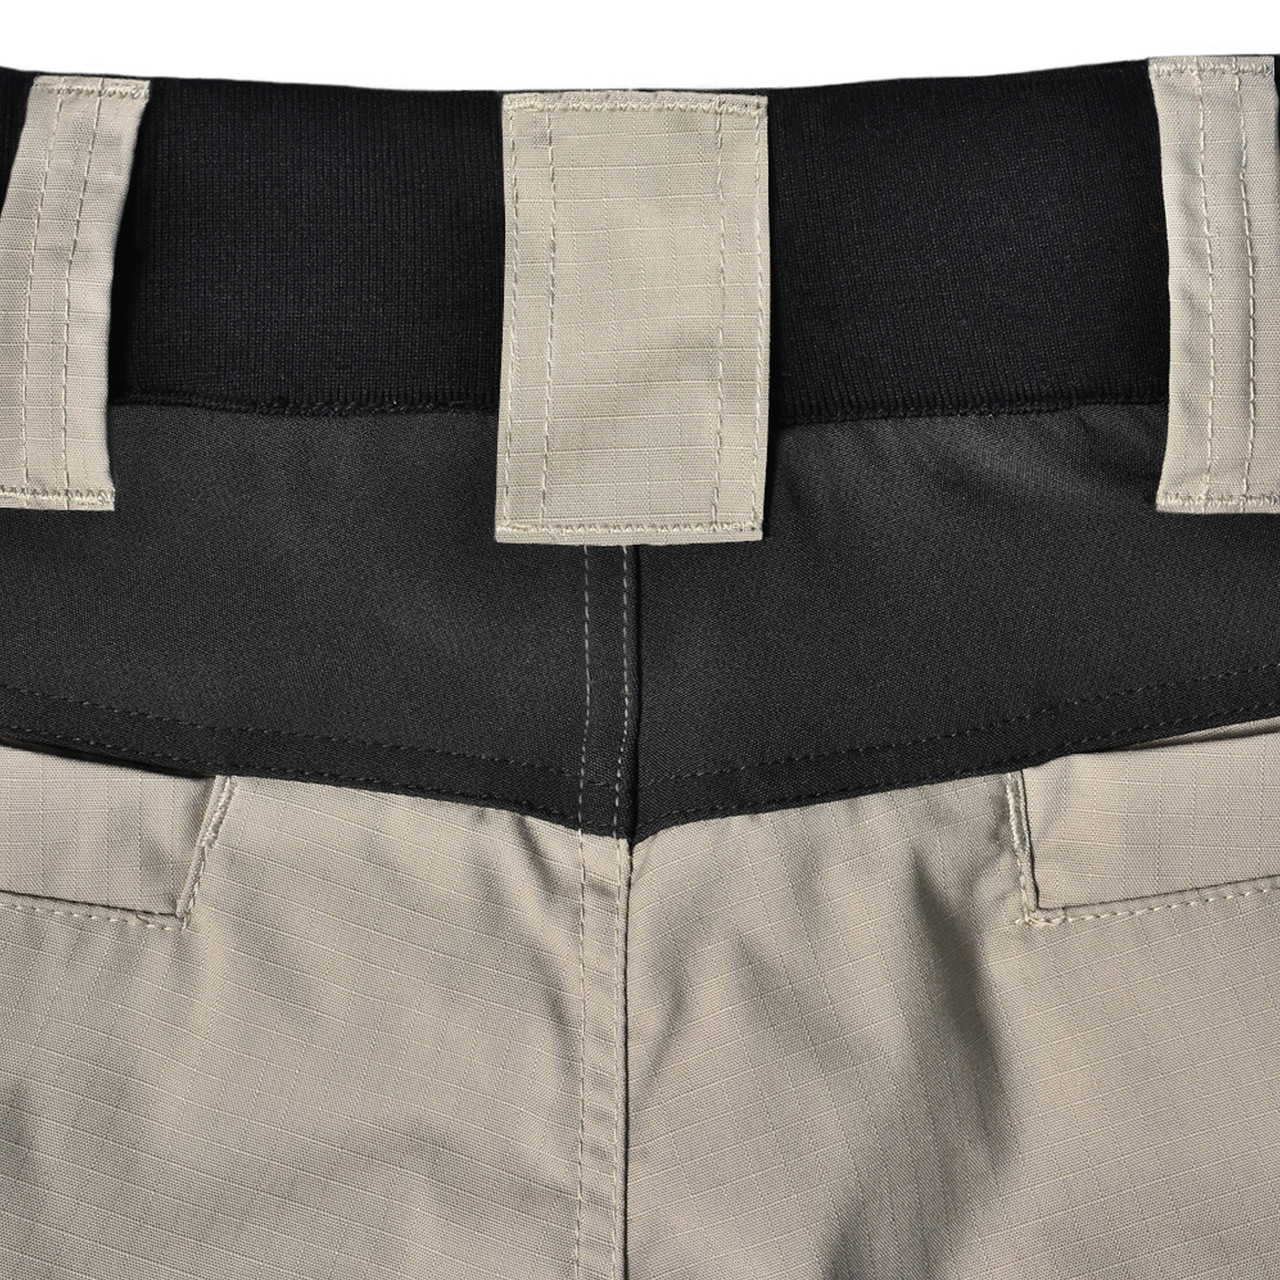 Unisex Rip-Stop Stretch Work Shorts | Shop Discount Work Safety Wear Online